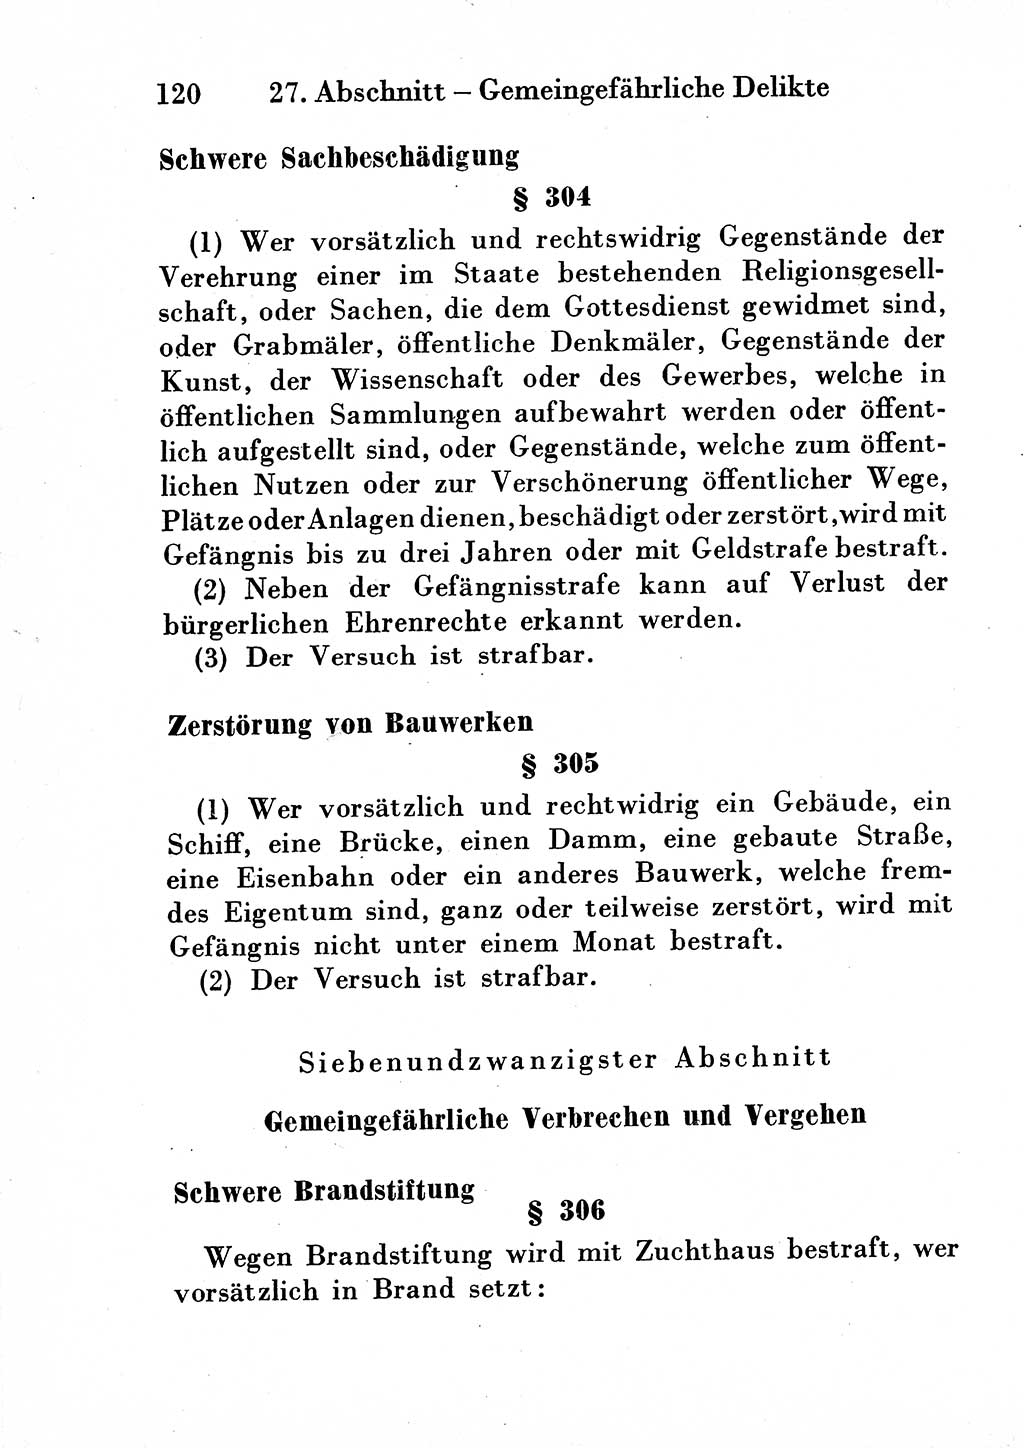 Strafgesetzbuch (StGB) und andere Strafgesetze [Deutsche Demokratische Republik (DDR)] 1954, Seite 120 (StGB Strafges. DDR 1954, S. 120)